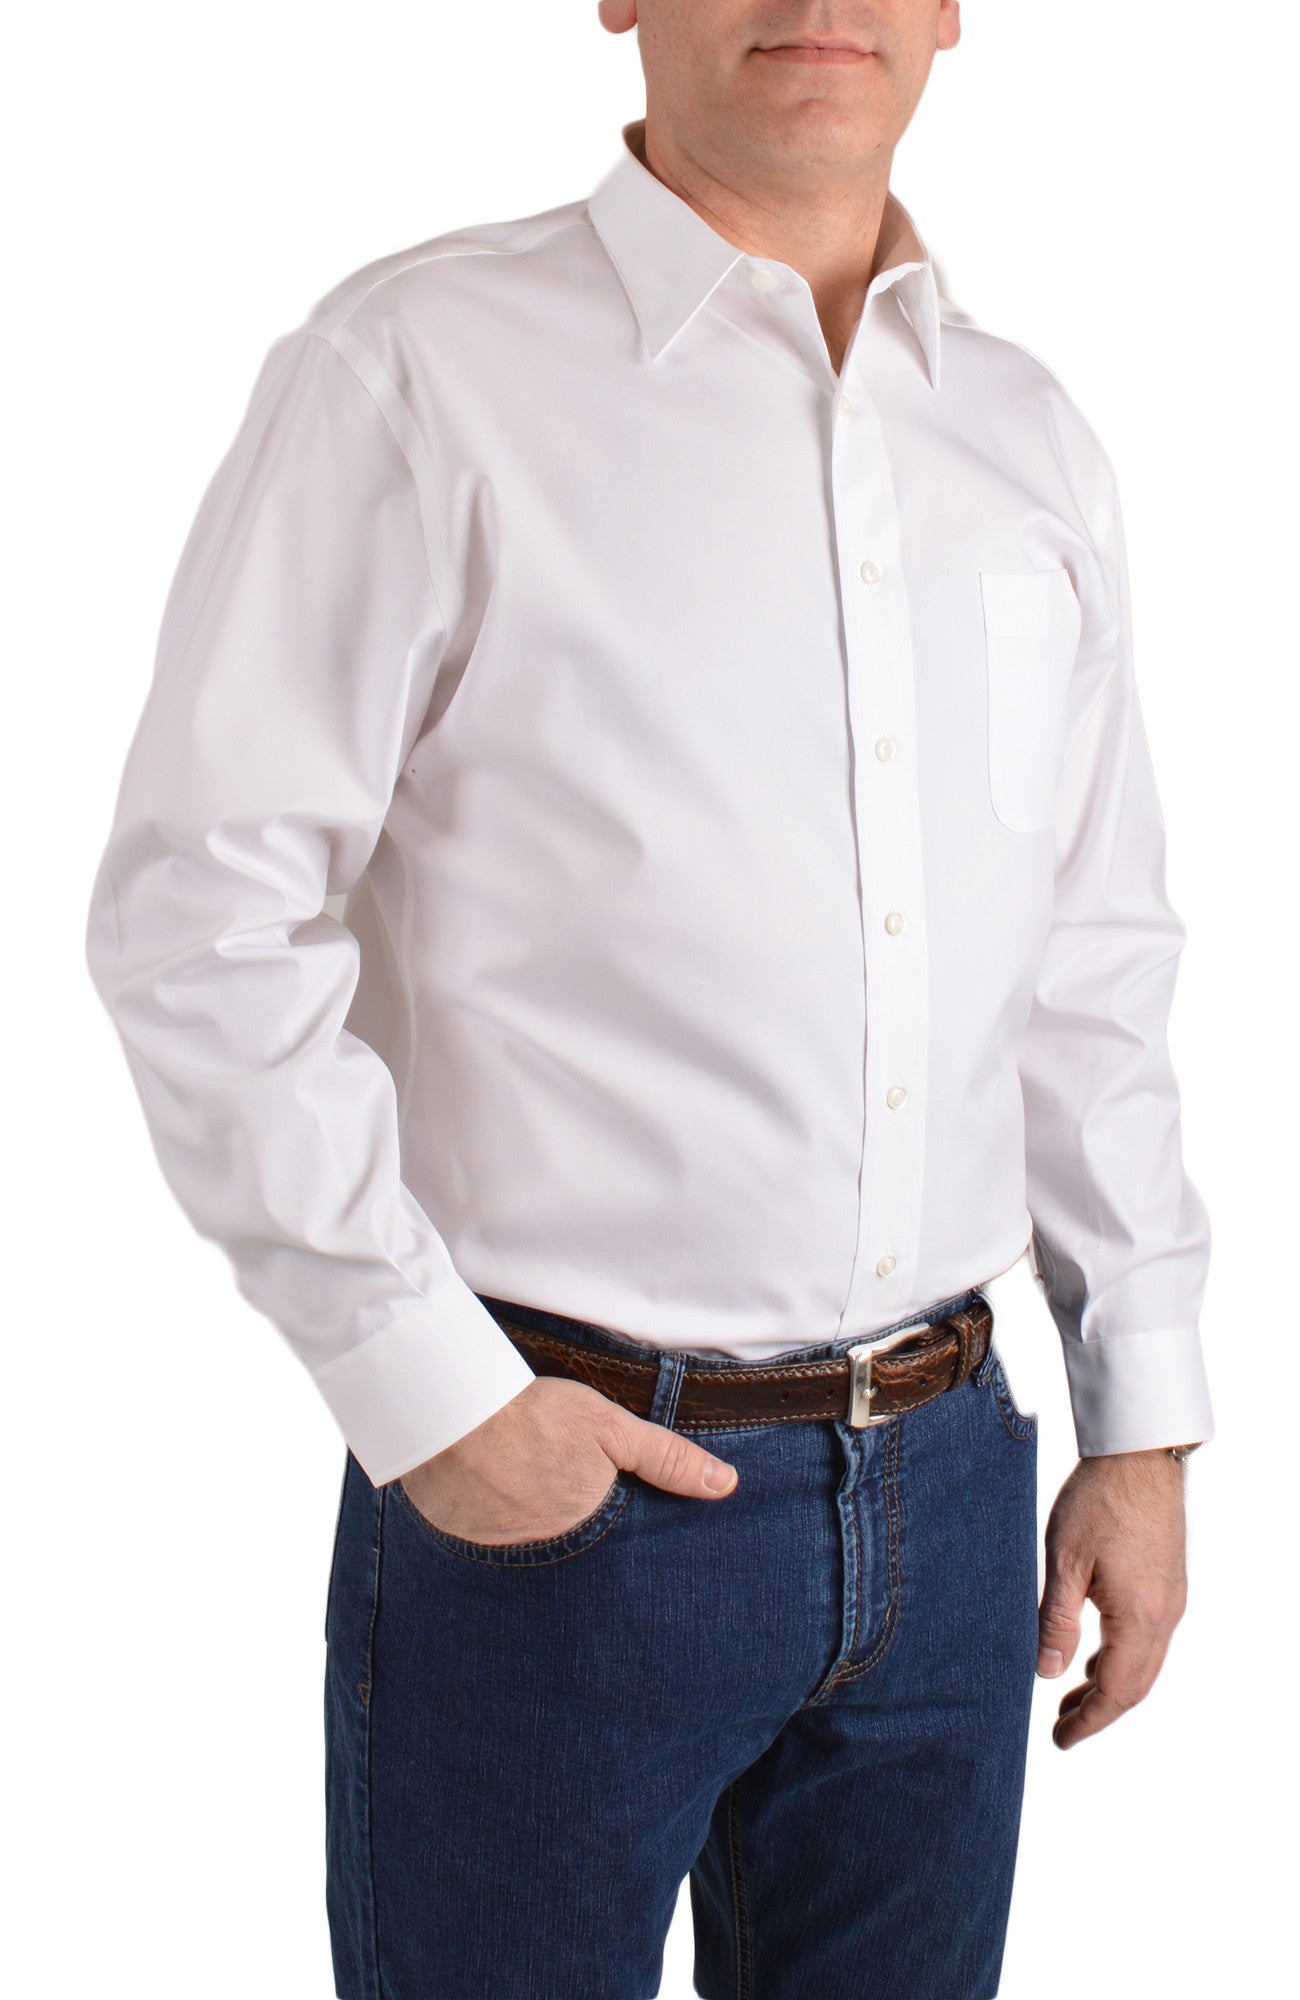 mens white casual button shirt